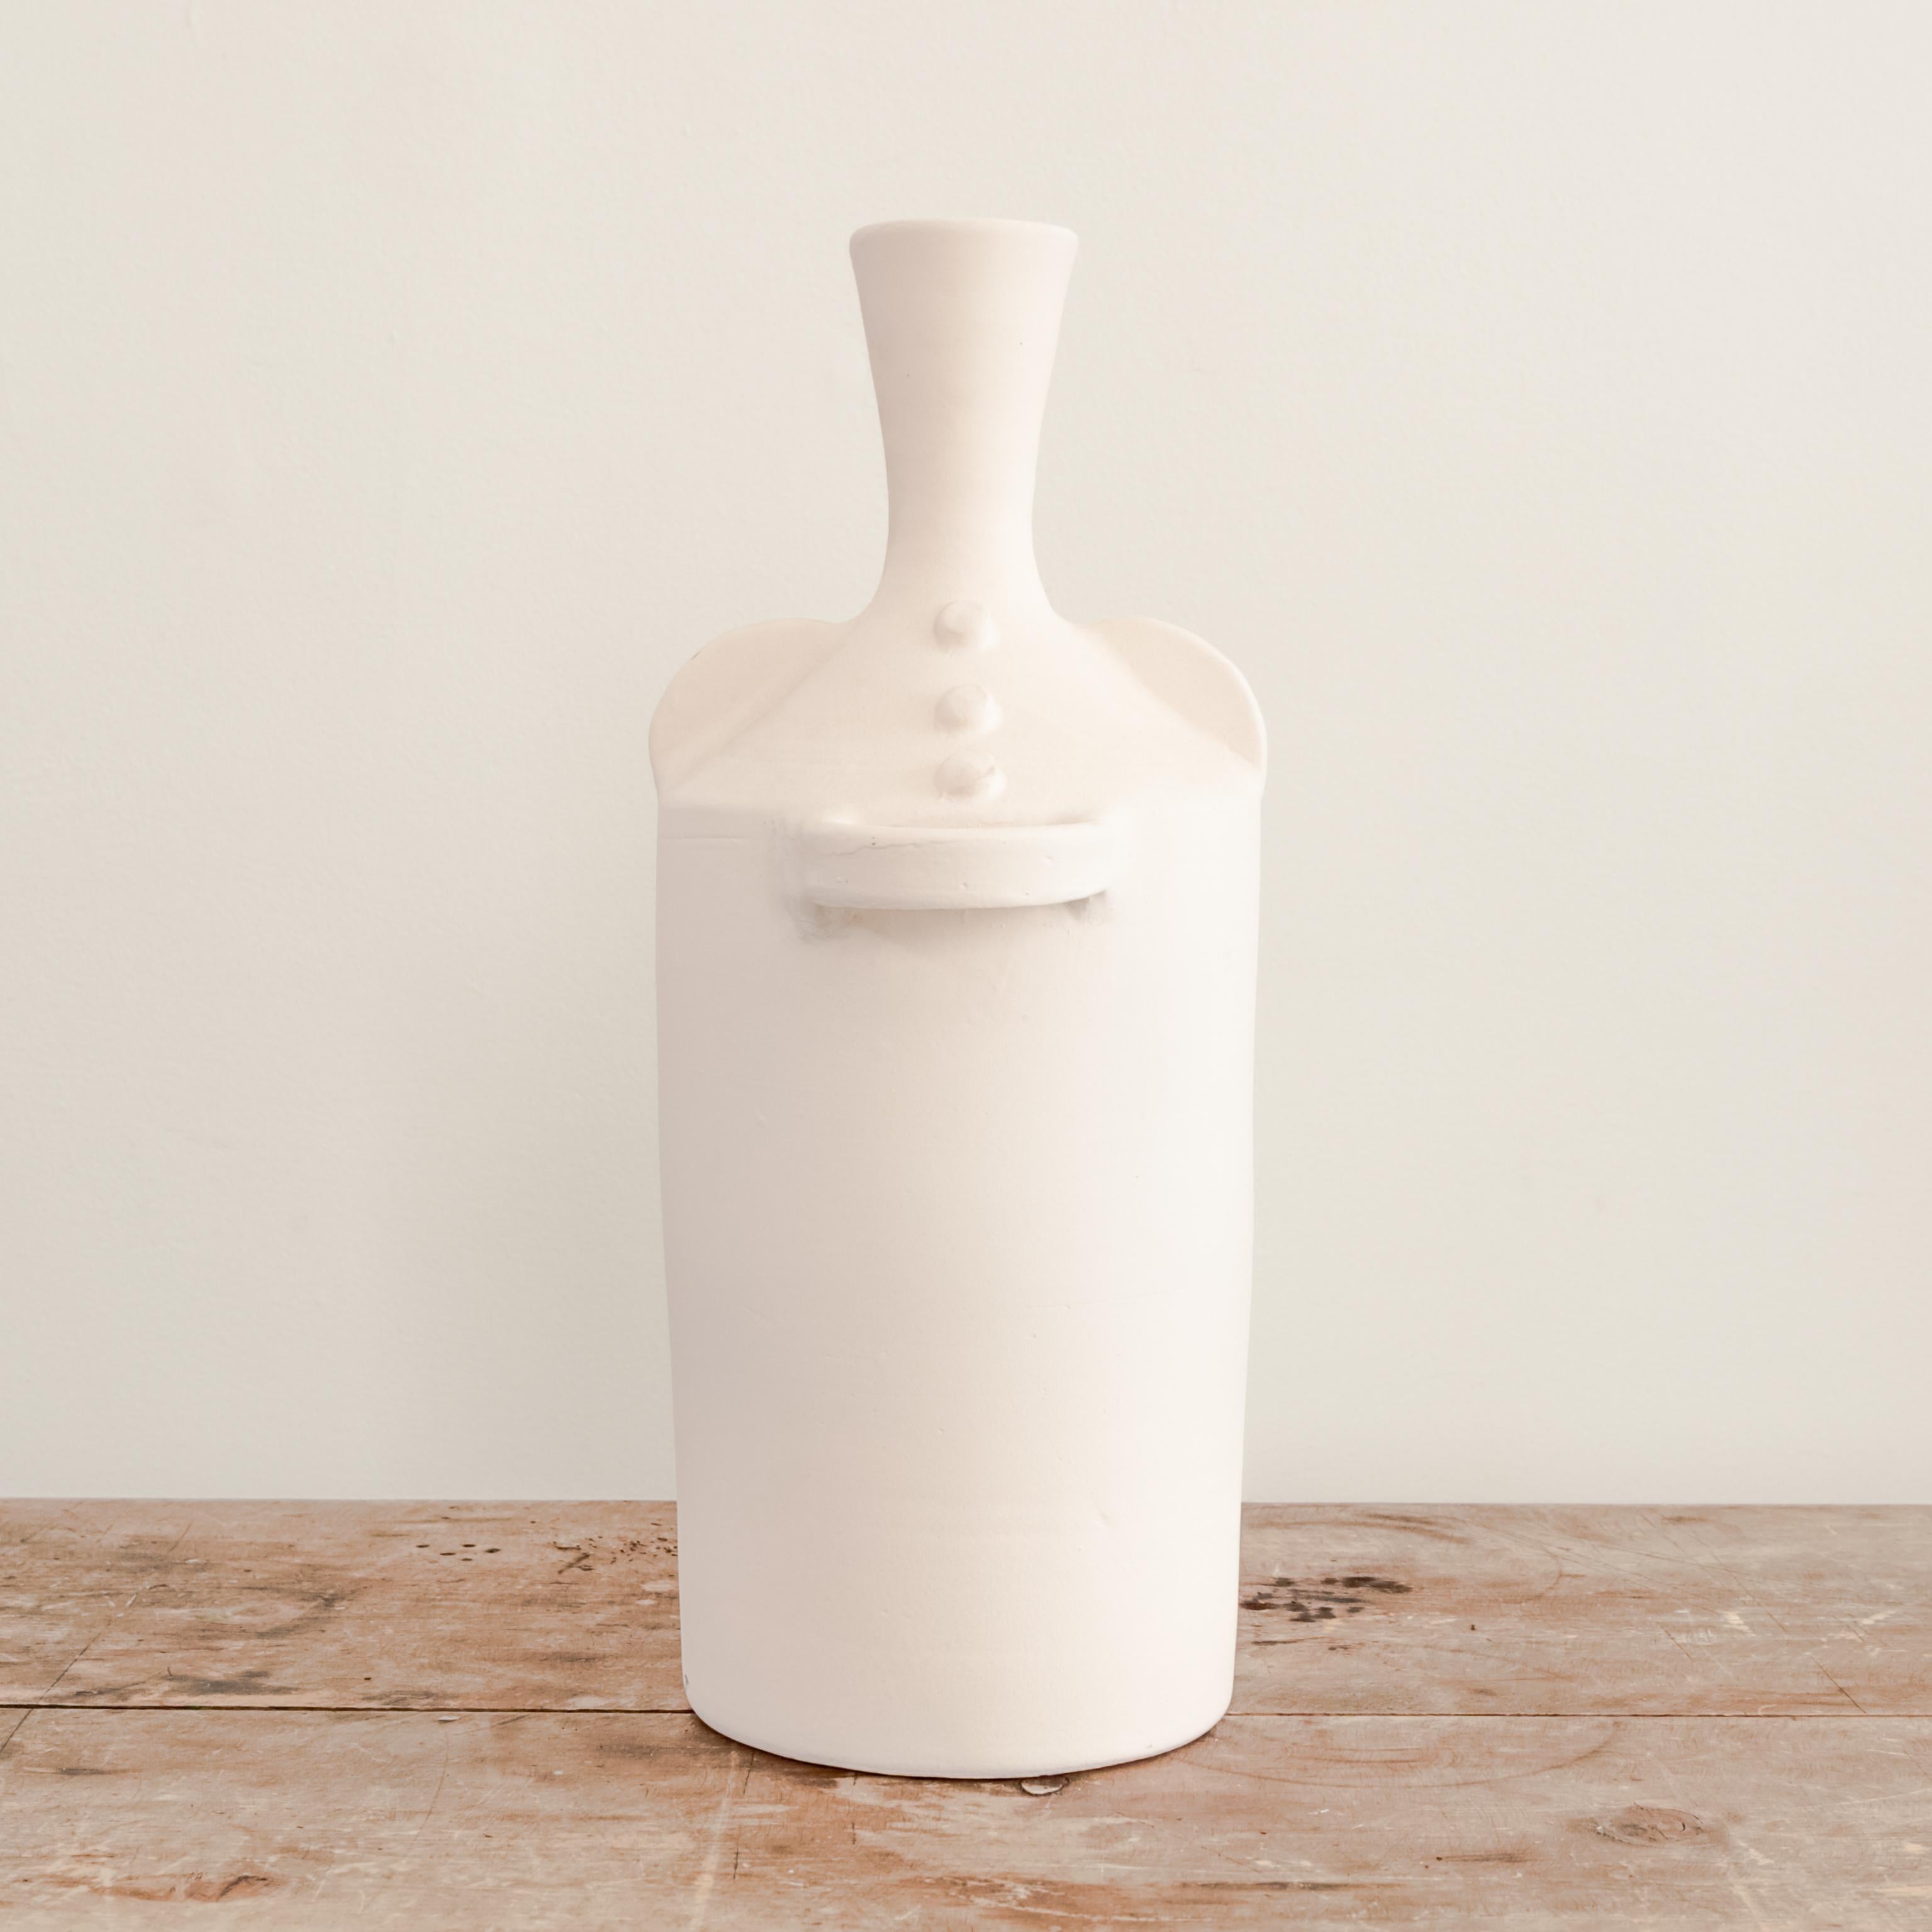 Unglazed white ceramic Elysian vase with handles.